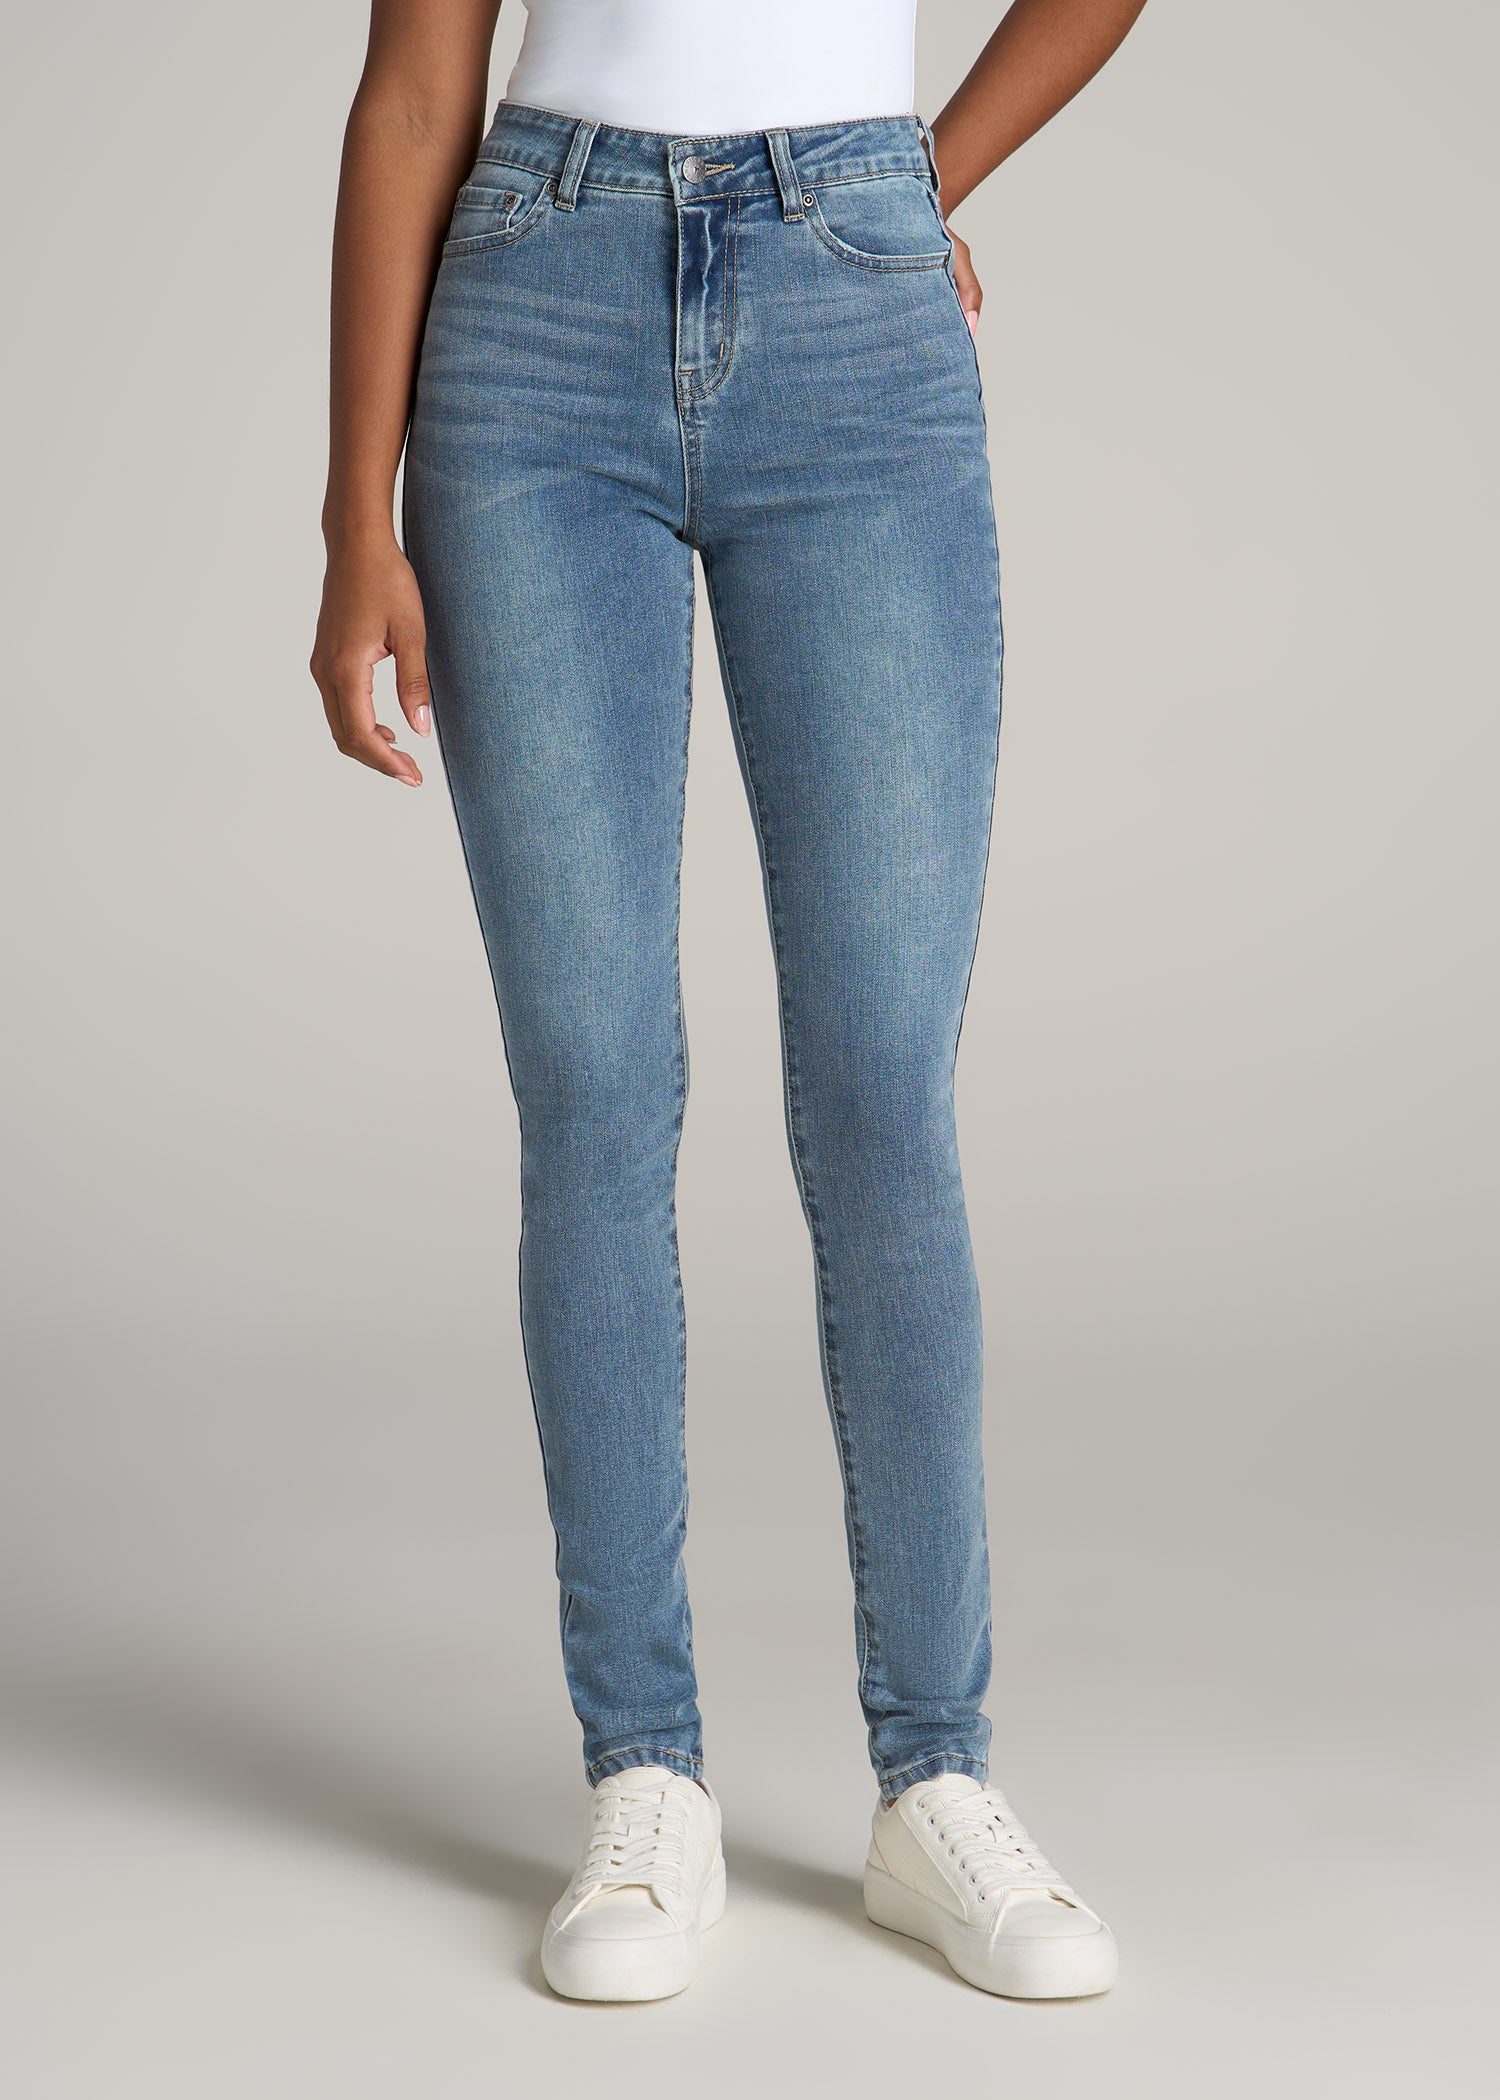 Shop Women's Ankle Jeans, Cute & Comfy Denim